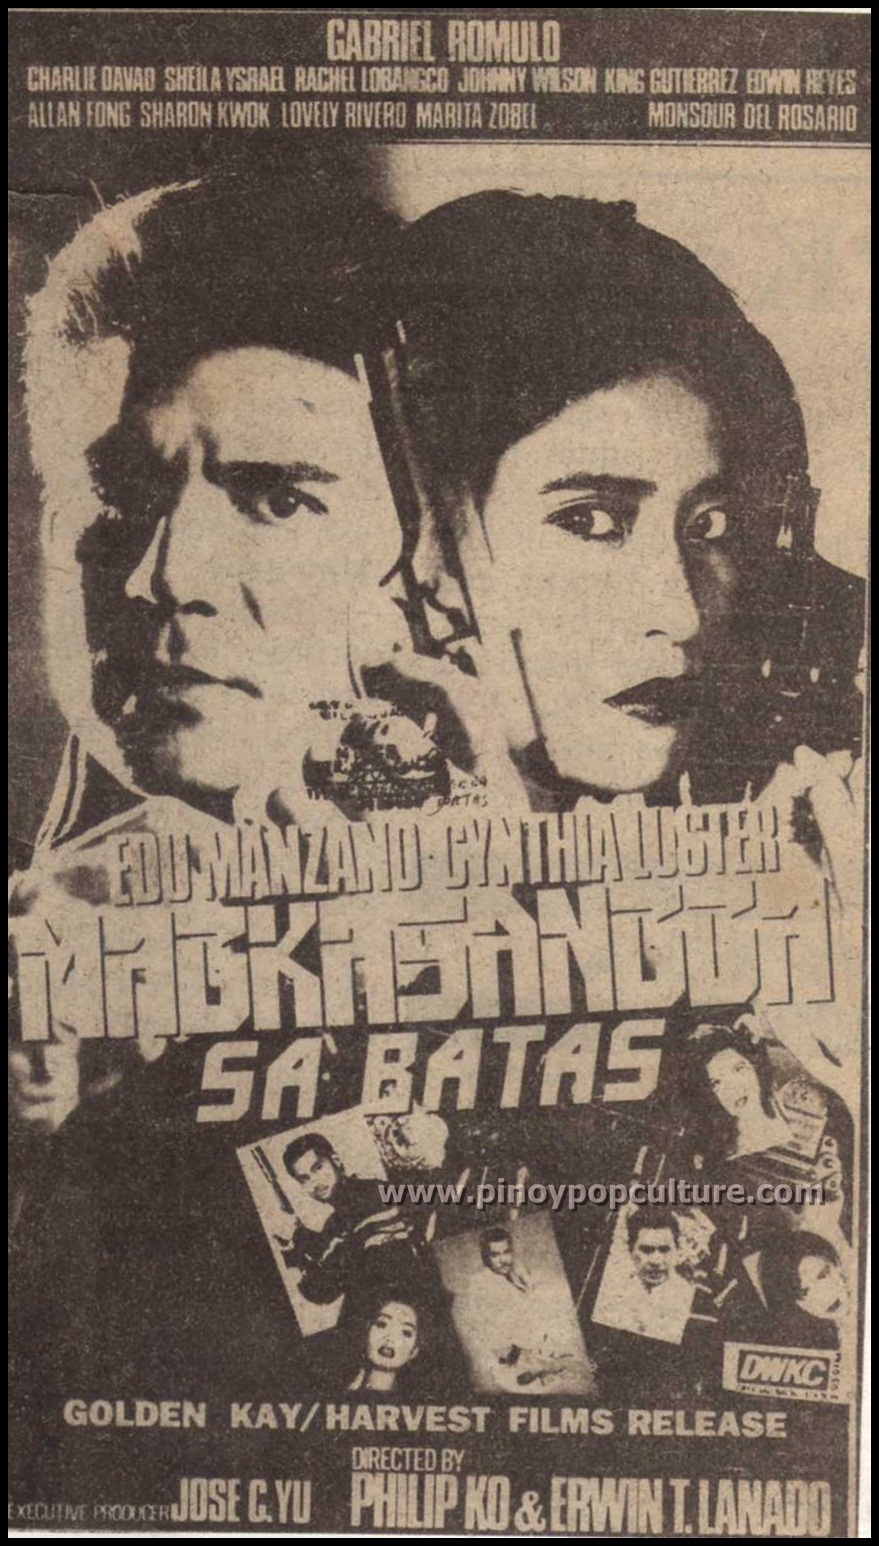 Magkasangga Sa Batas [1993]